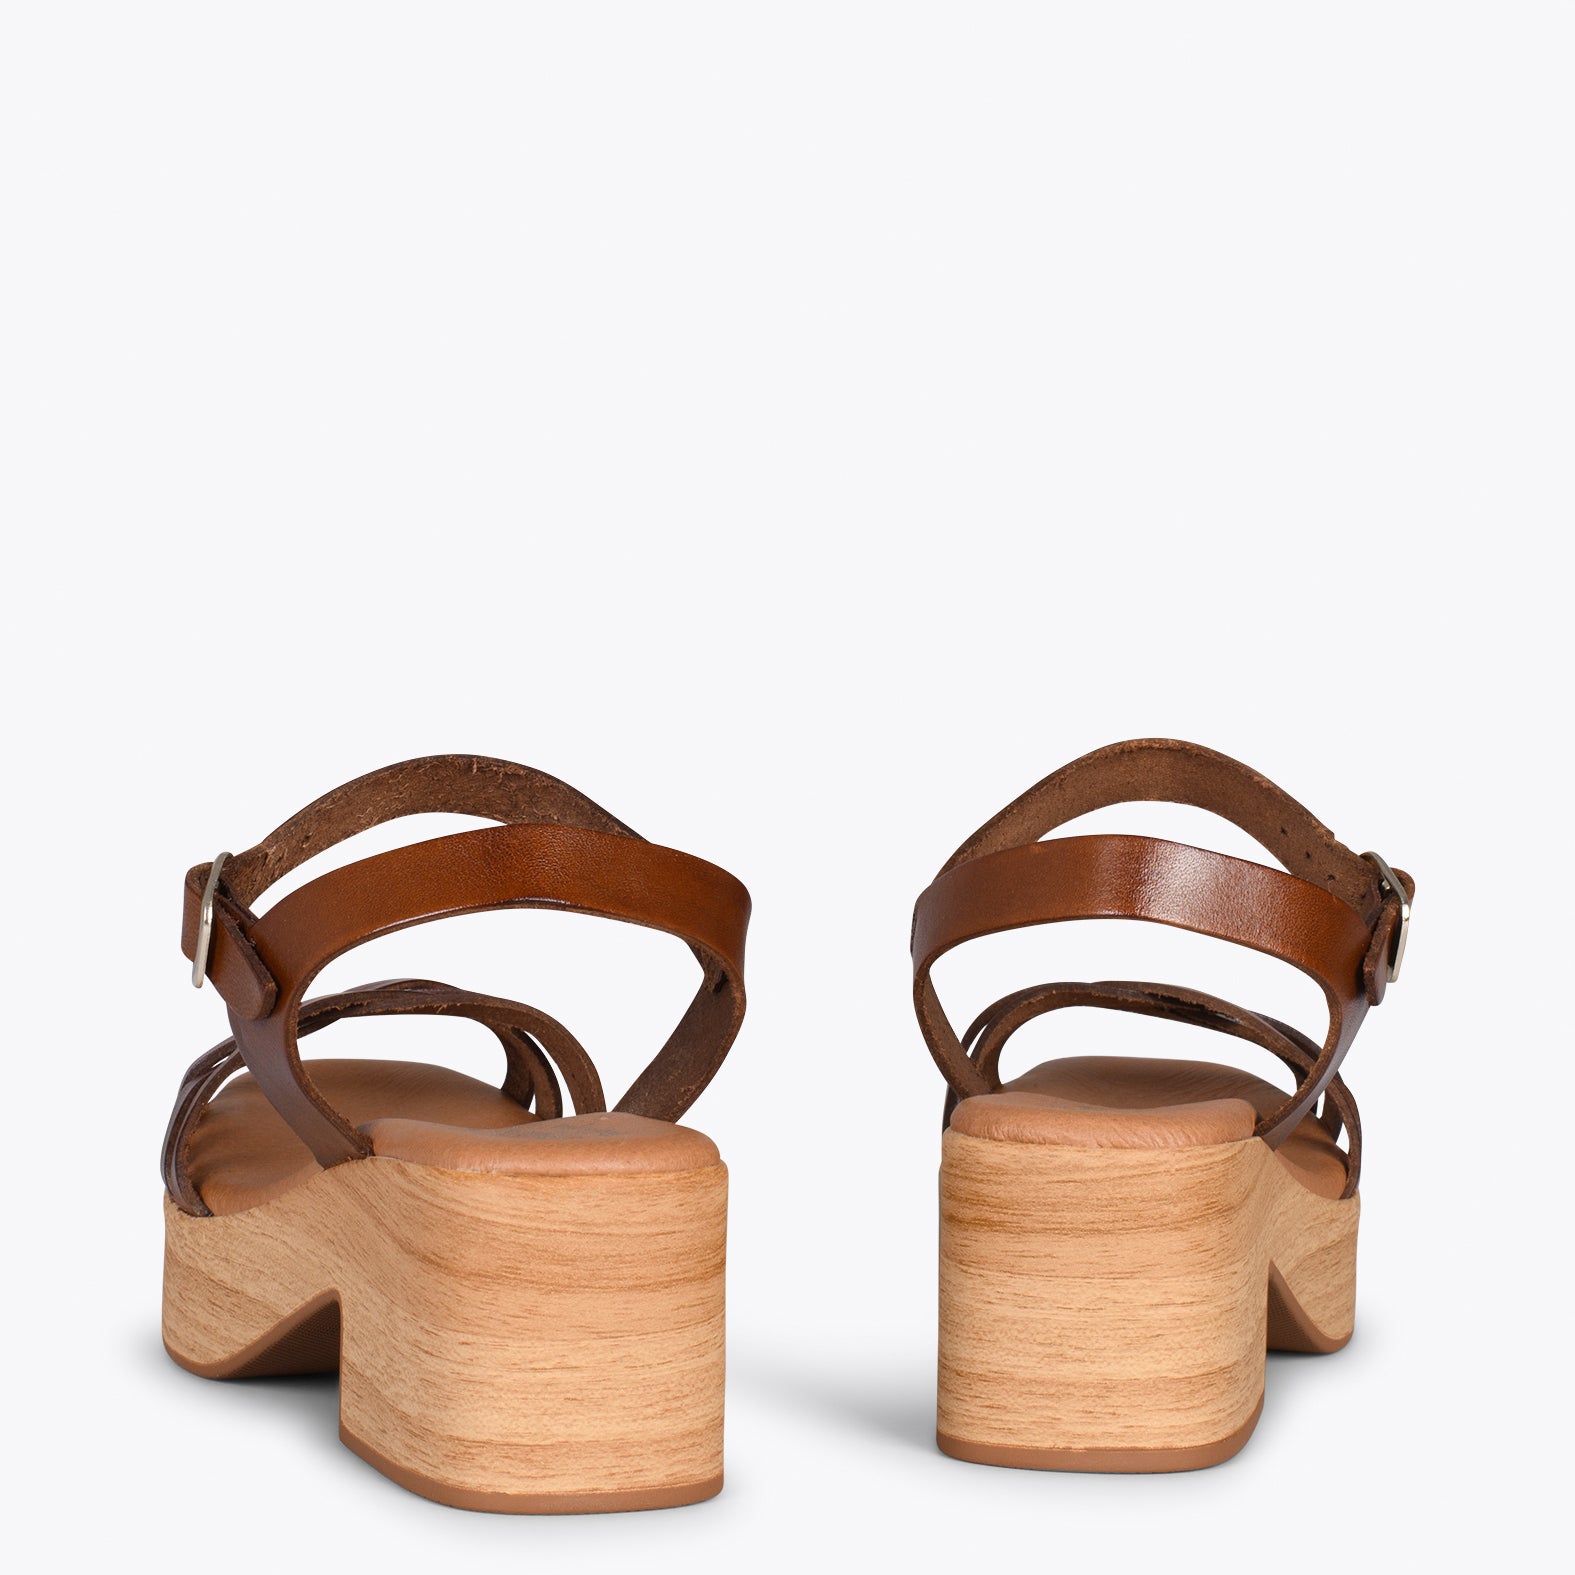 WOOD – Sandalias imitación madera con tiras MARRÓN